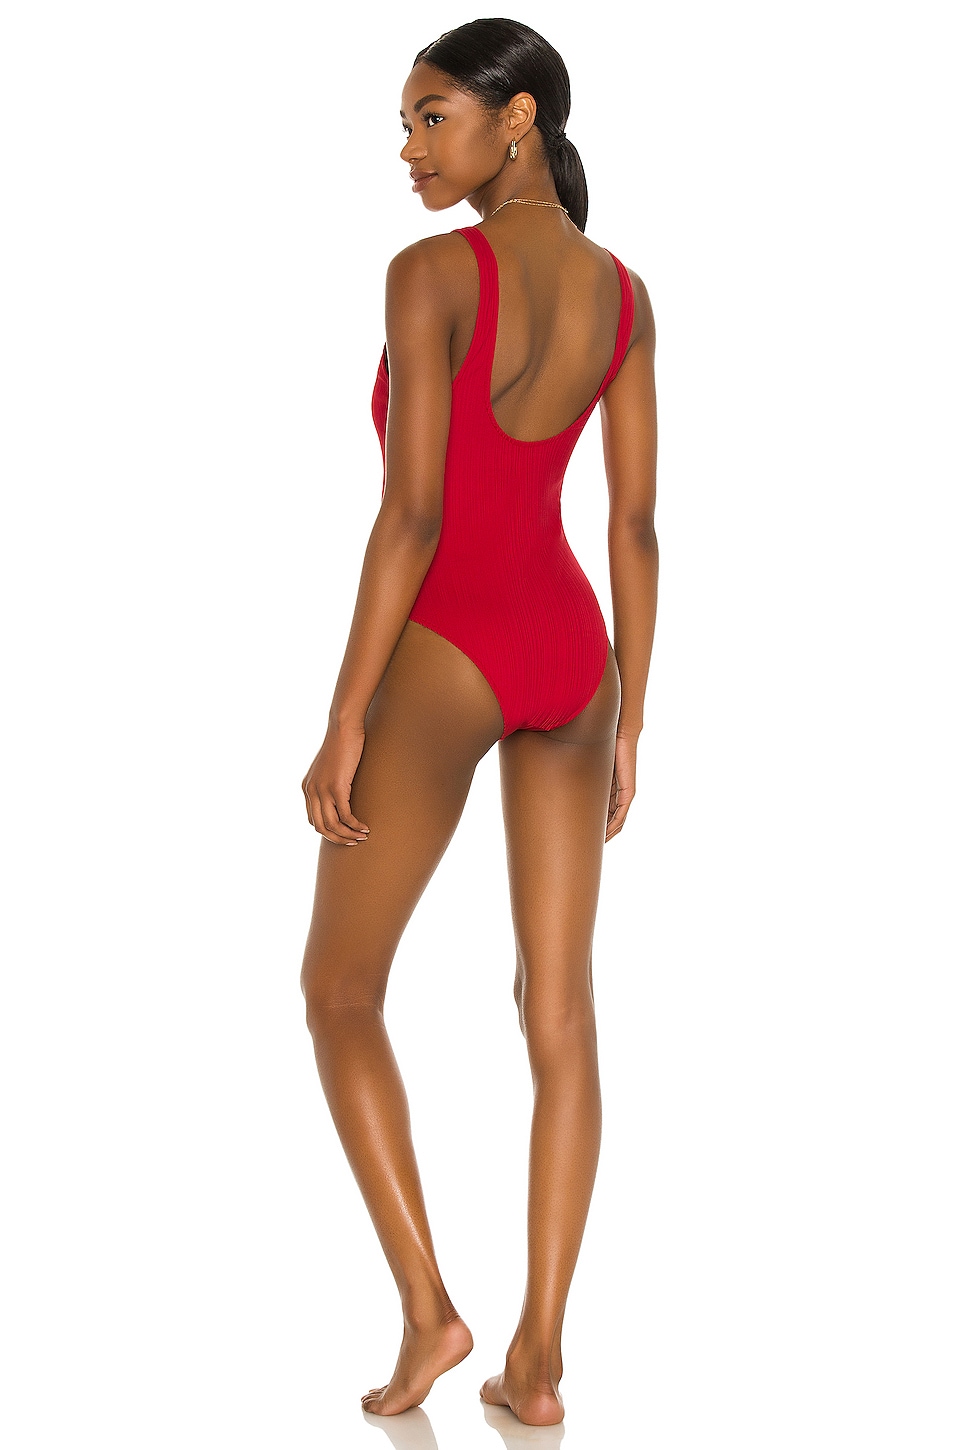 ARO Swim X Madelyn Cline Emmie One Piece Bikini Scarlet